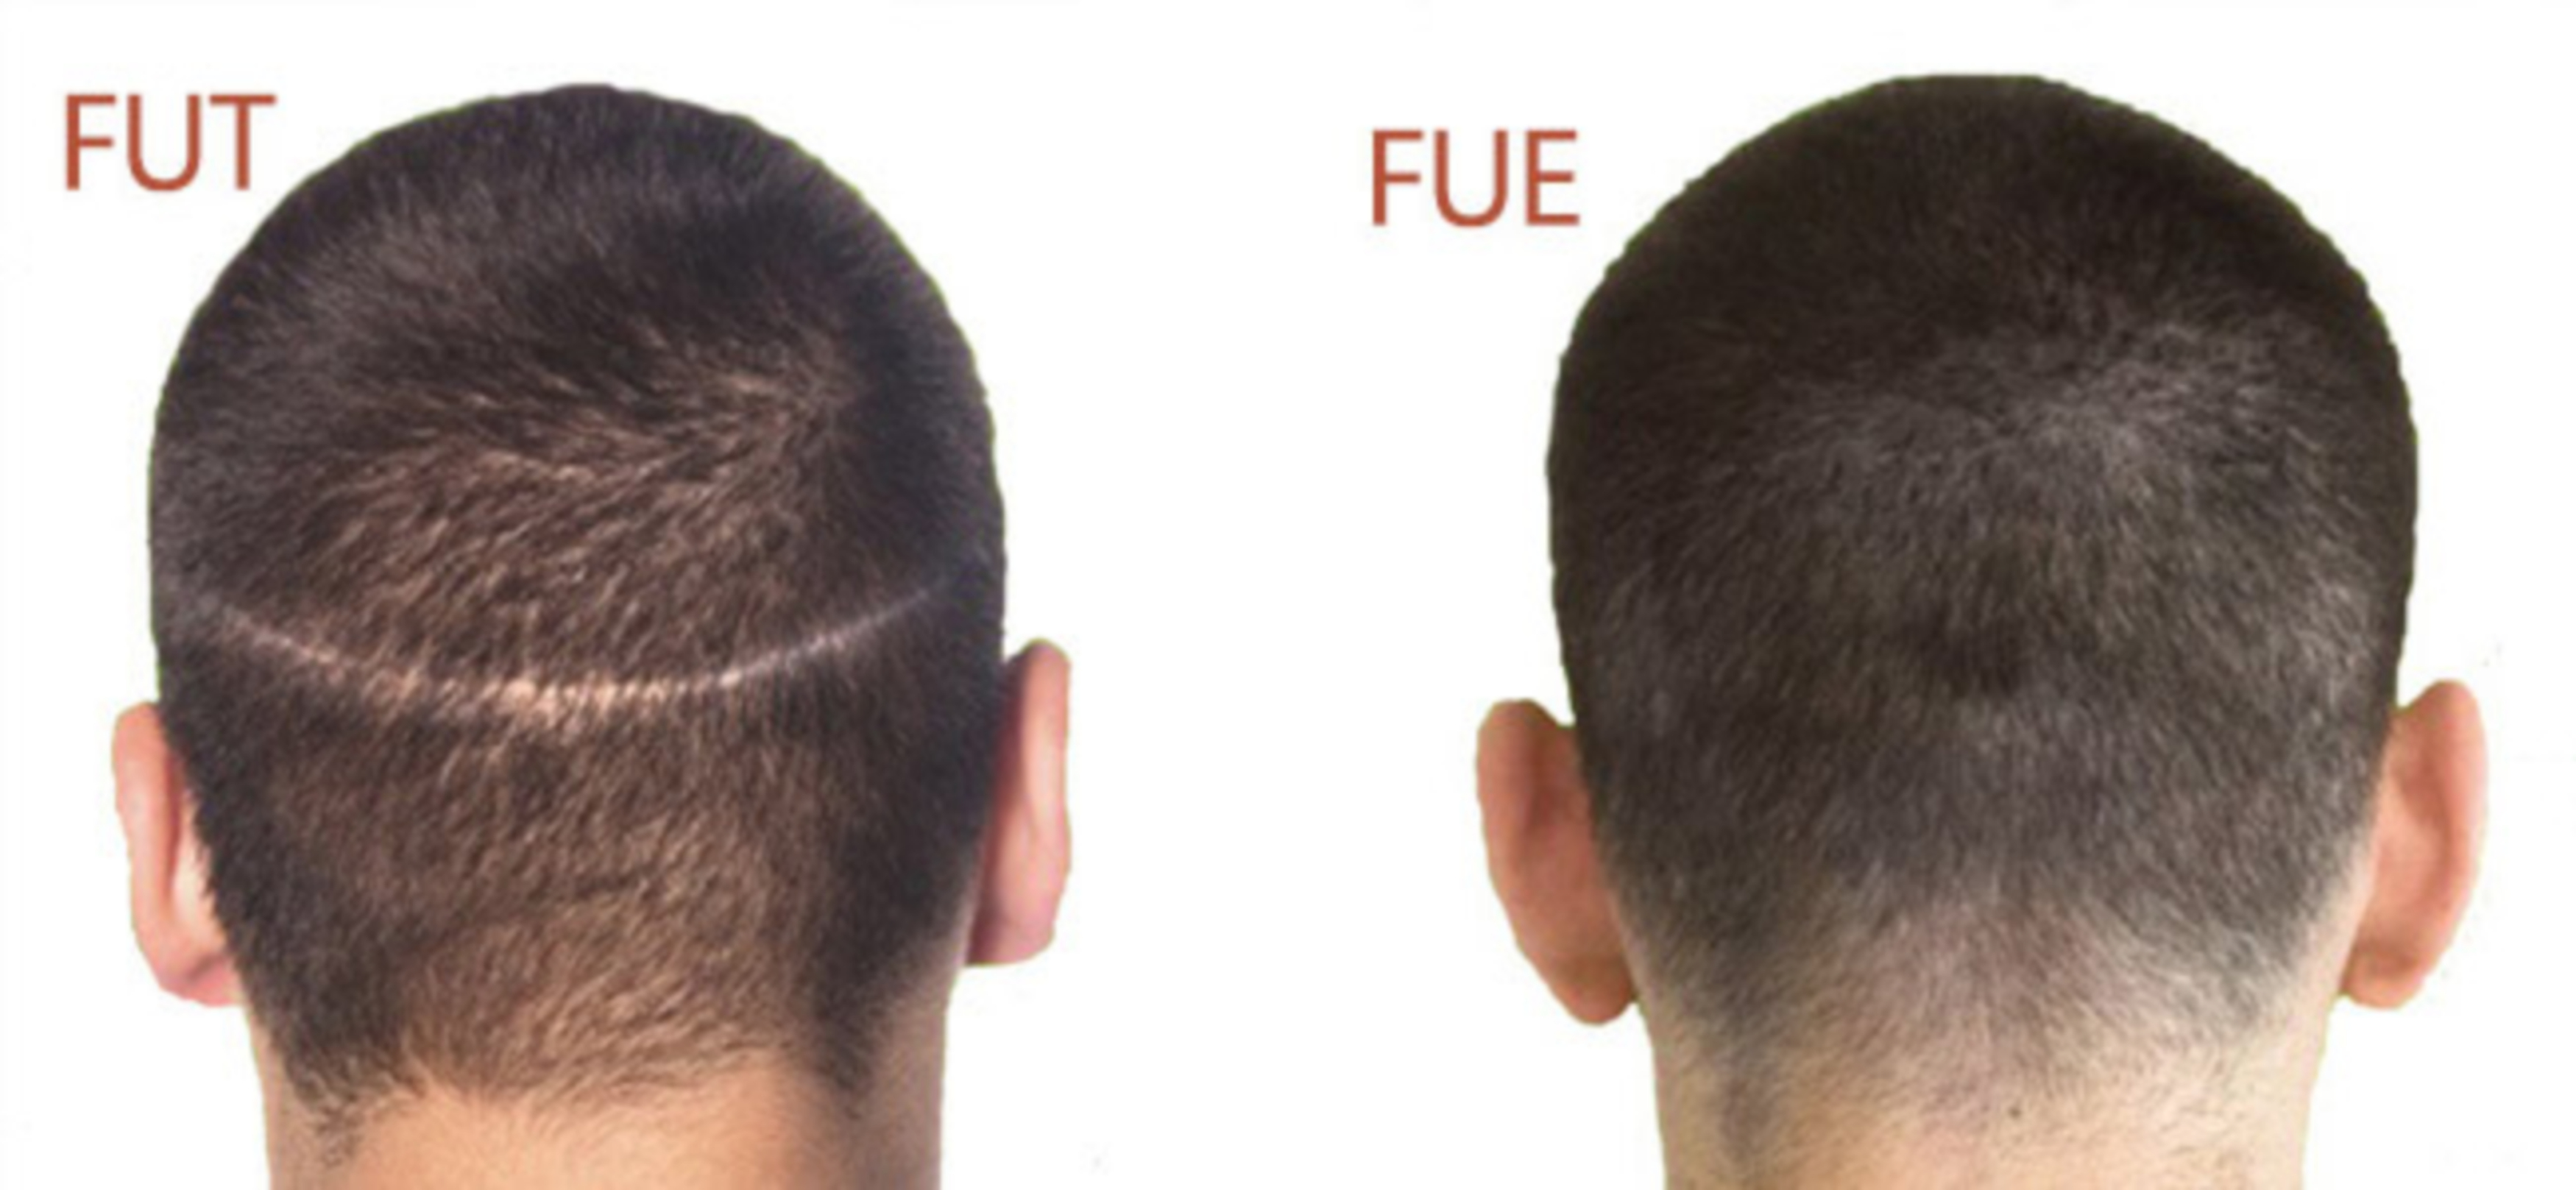 So sánh sự khác nhau giữa cấy tóc FUE và FUT, ưu nhược điểm của từng kỹ thuật, cái nào tốt hơn?